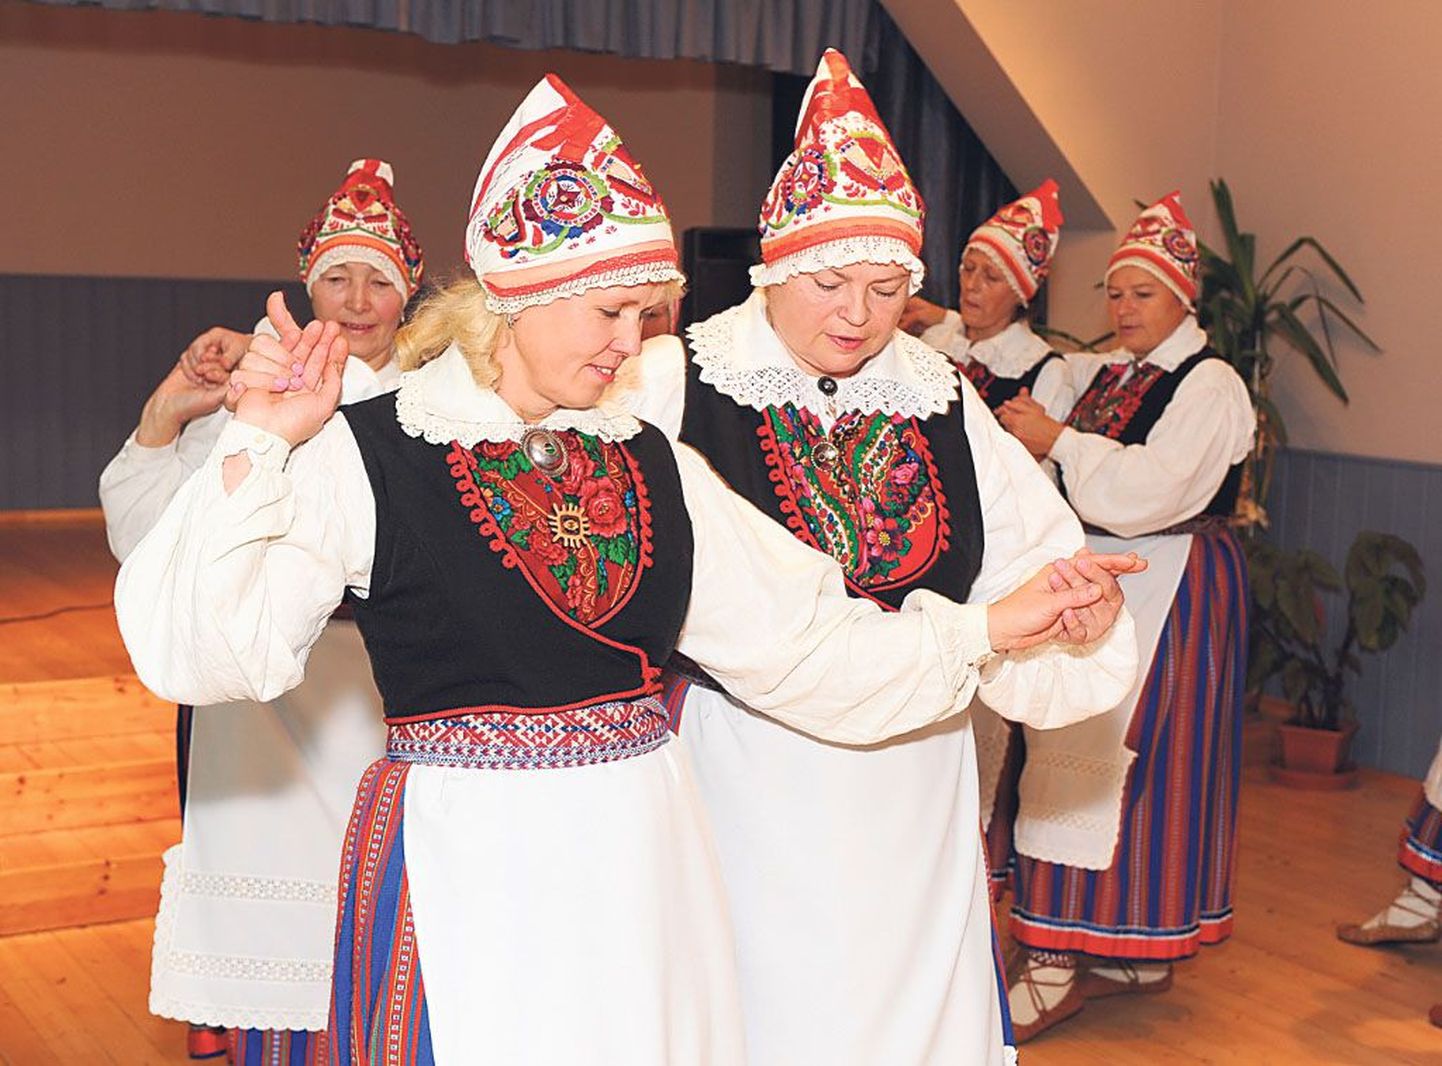 Audru naised ja Kihlepasse peole saabunud vene folkloorirühmad näitasid, et lillelisi rätte kasutatakse nii eesti kui vene rahvakultuuris.